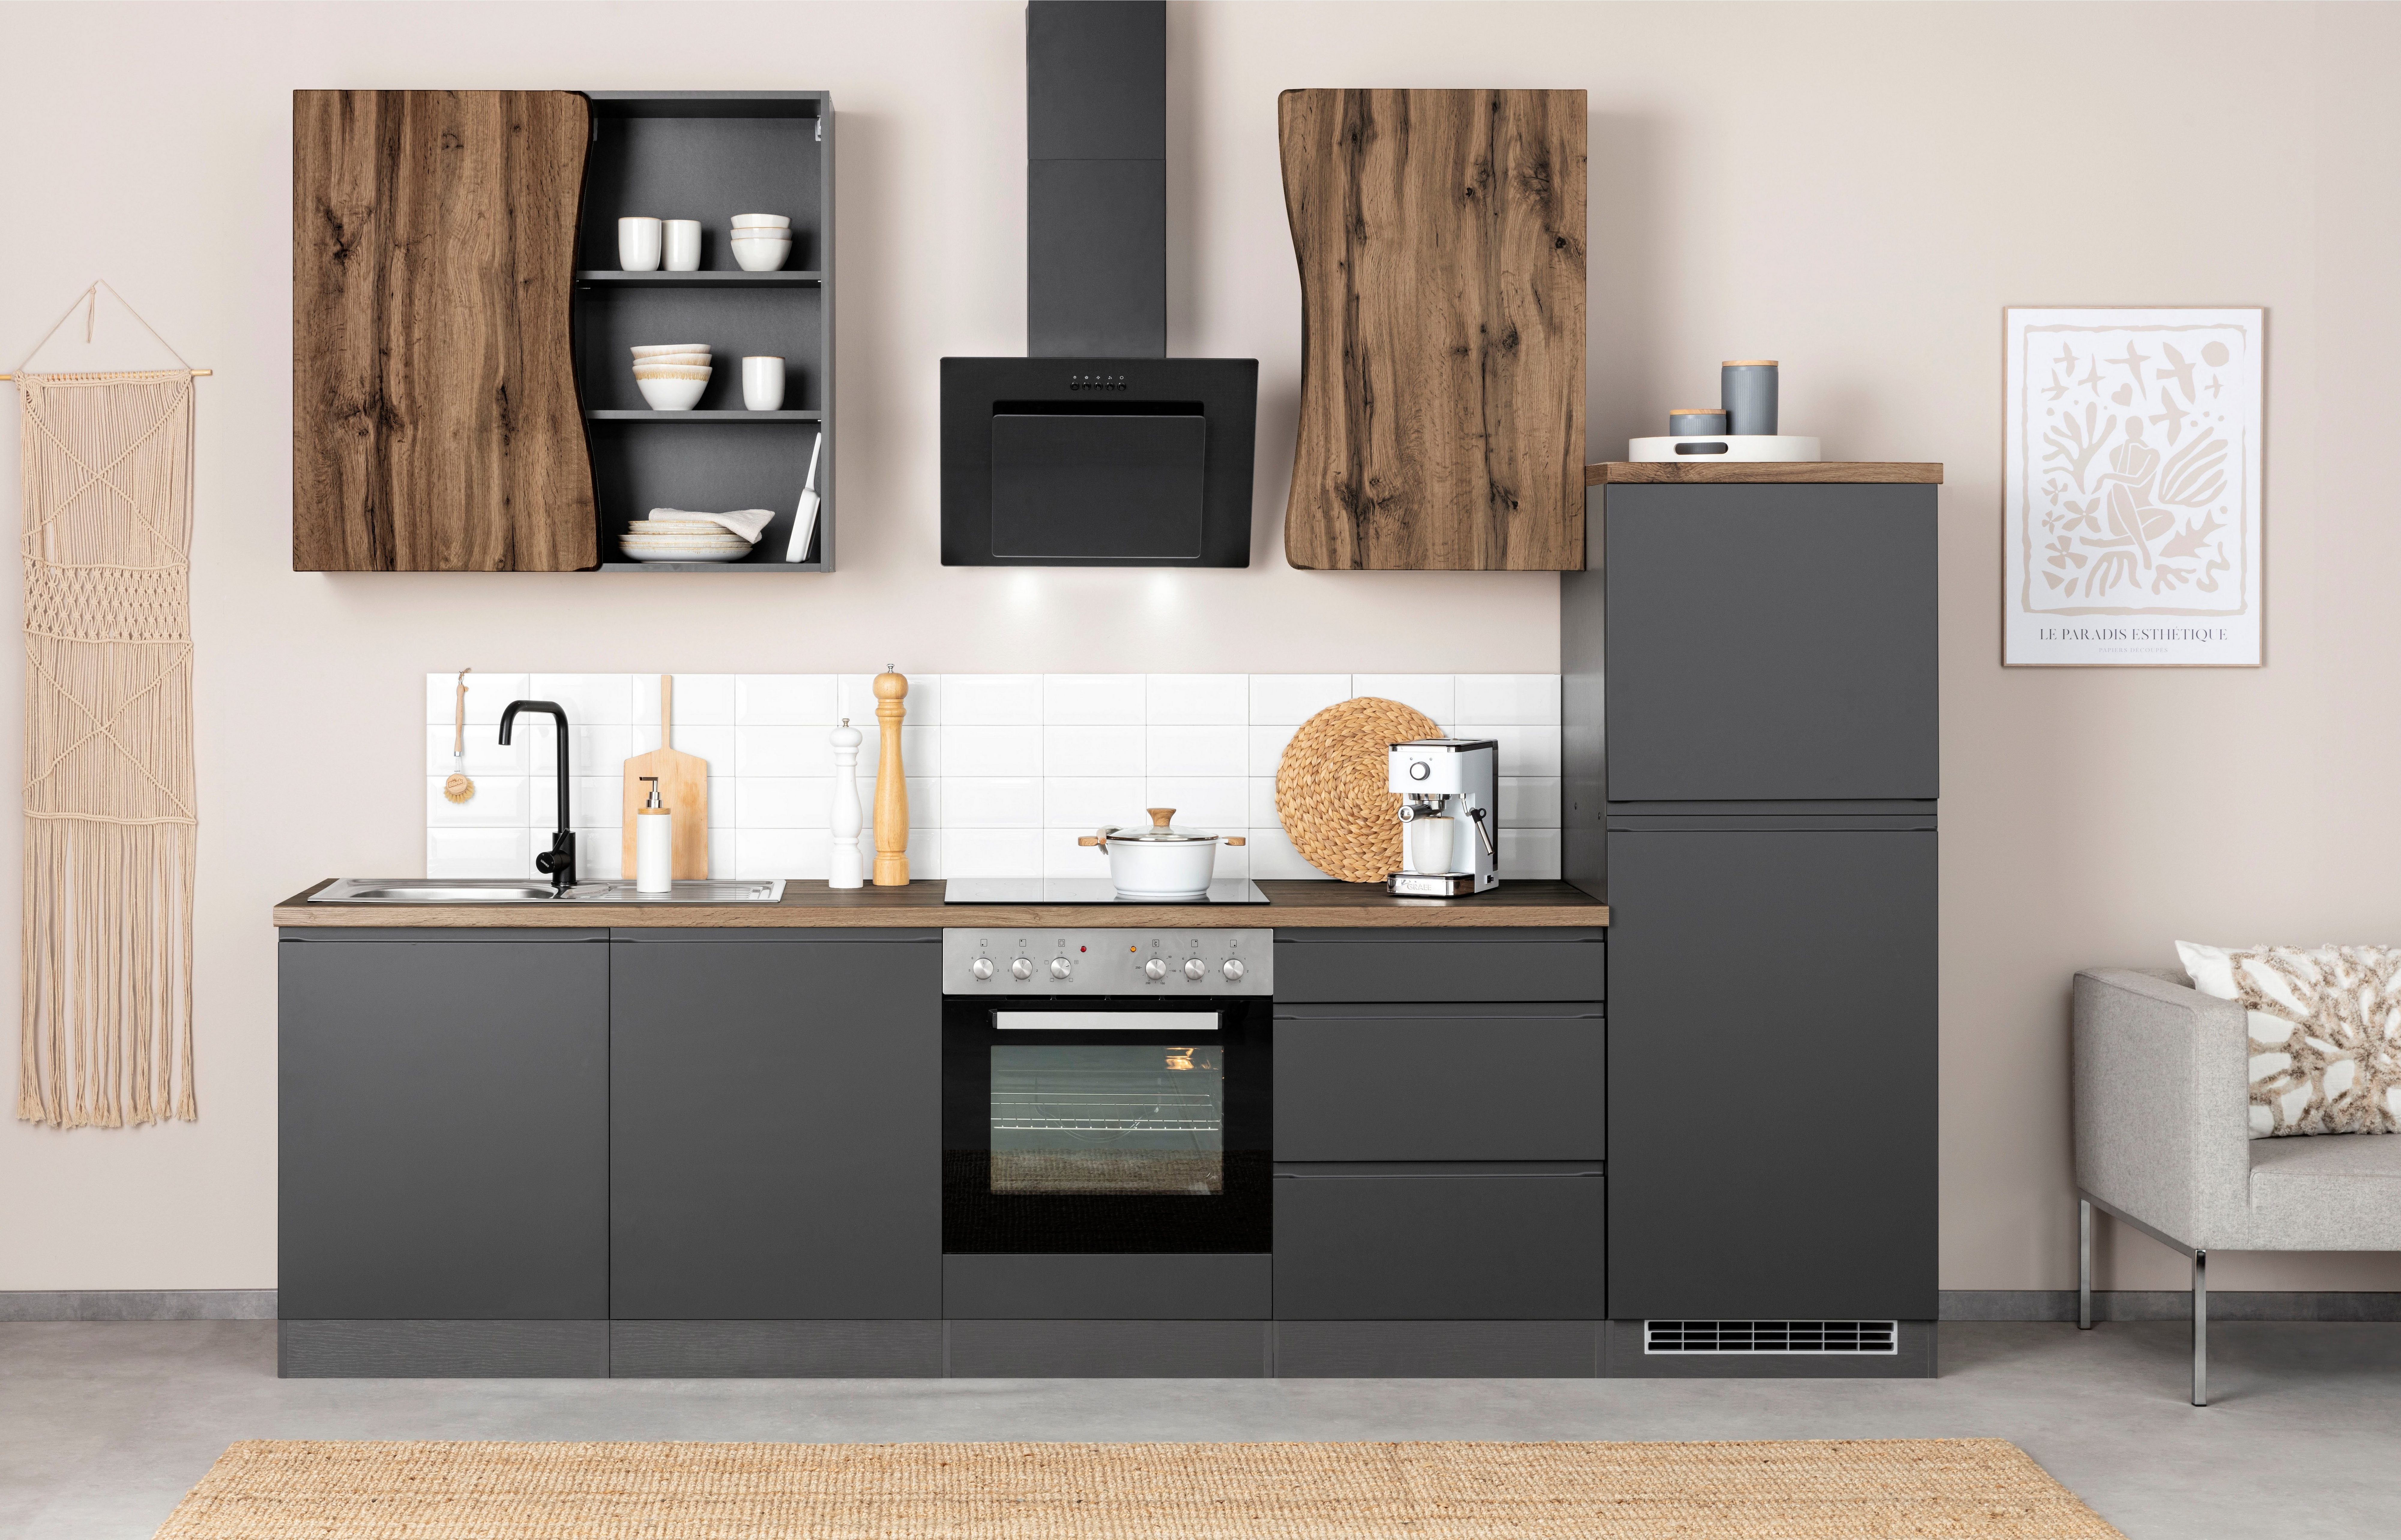 HELD MÖBEL Küche Bruneck, 300cm breit, wahlweise mit oder ohne E-Geräte, hochwertige MDF-Fronten grau